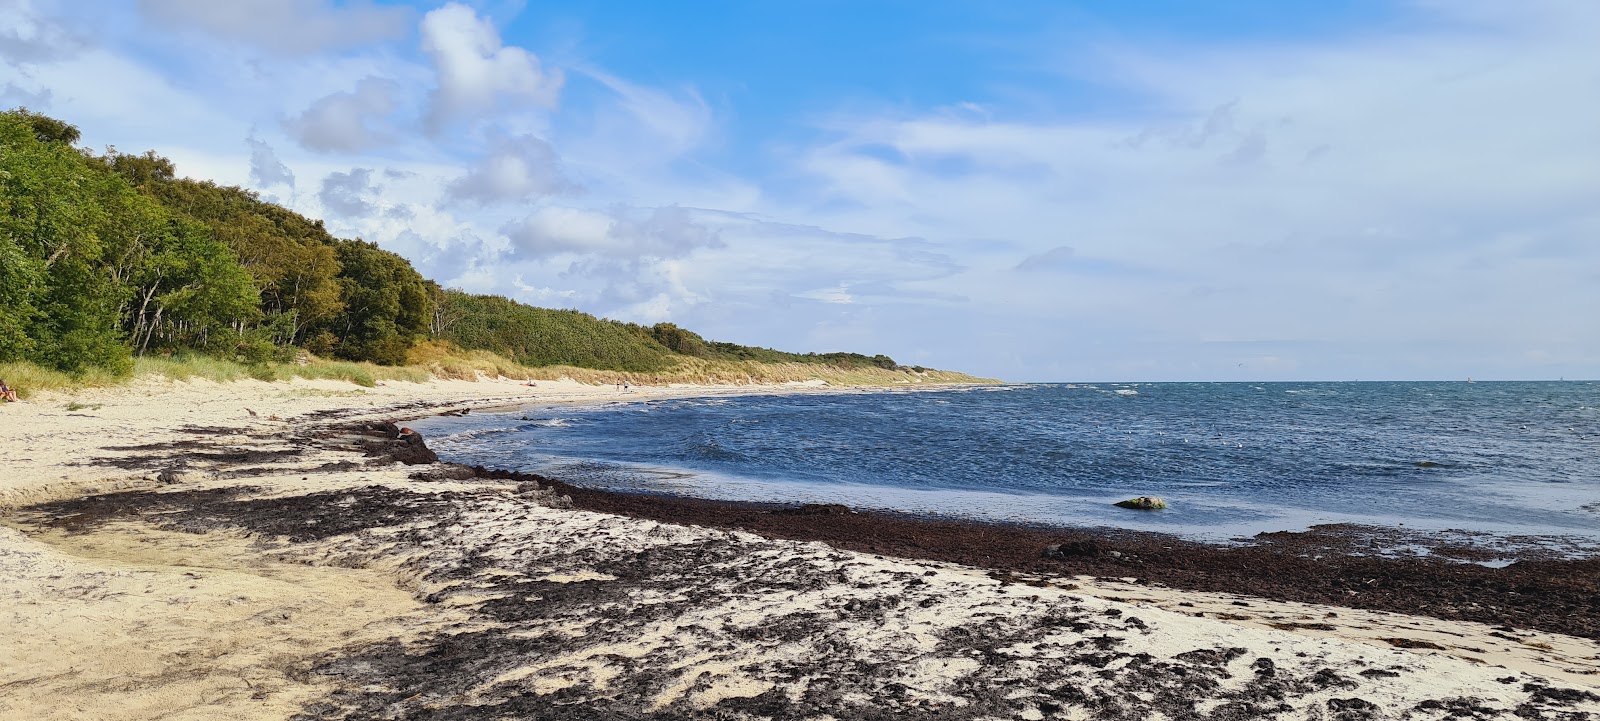 Foto von Strand Molle Odde mit langer gerader strand